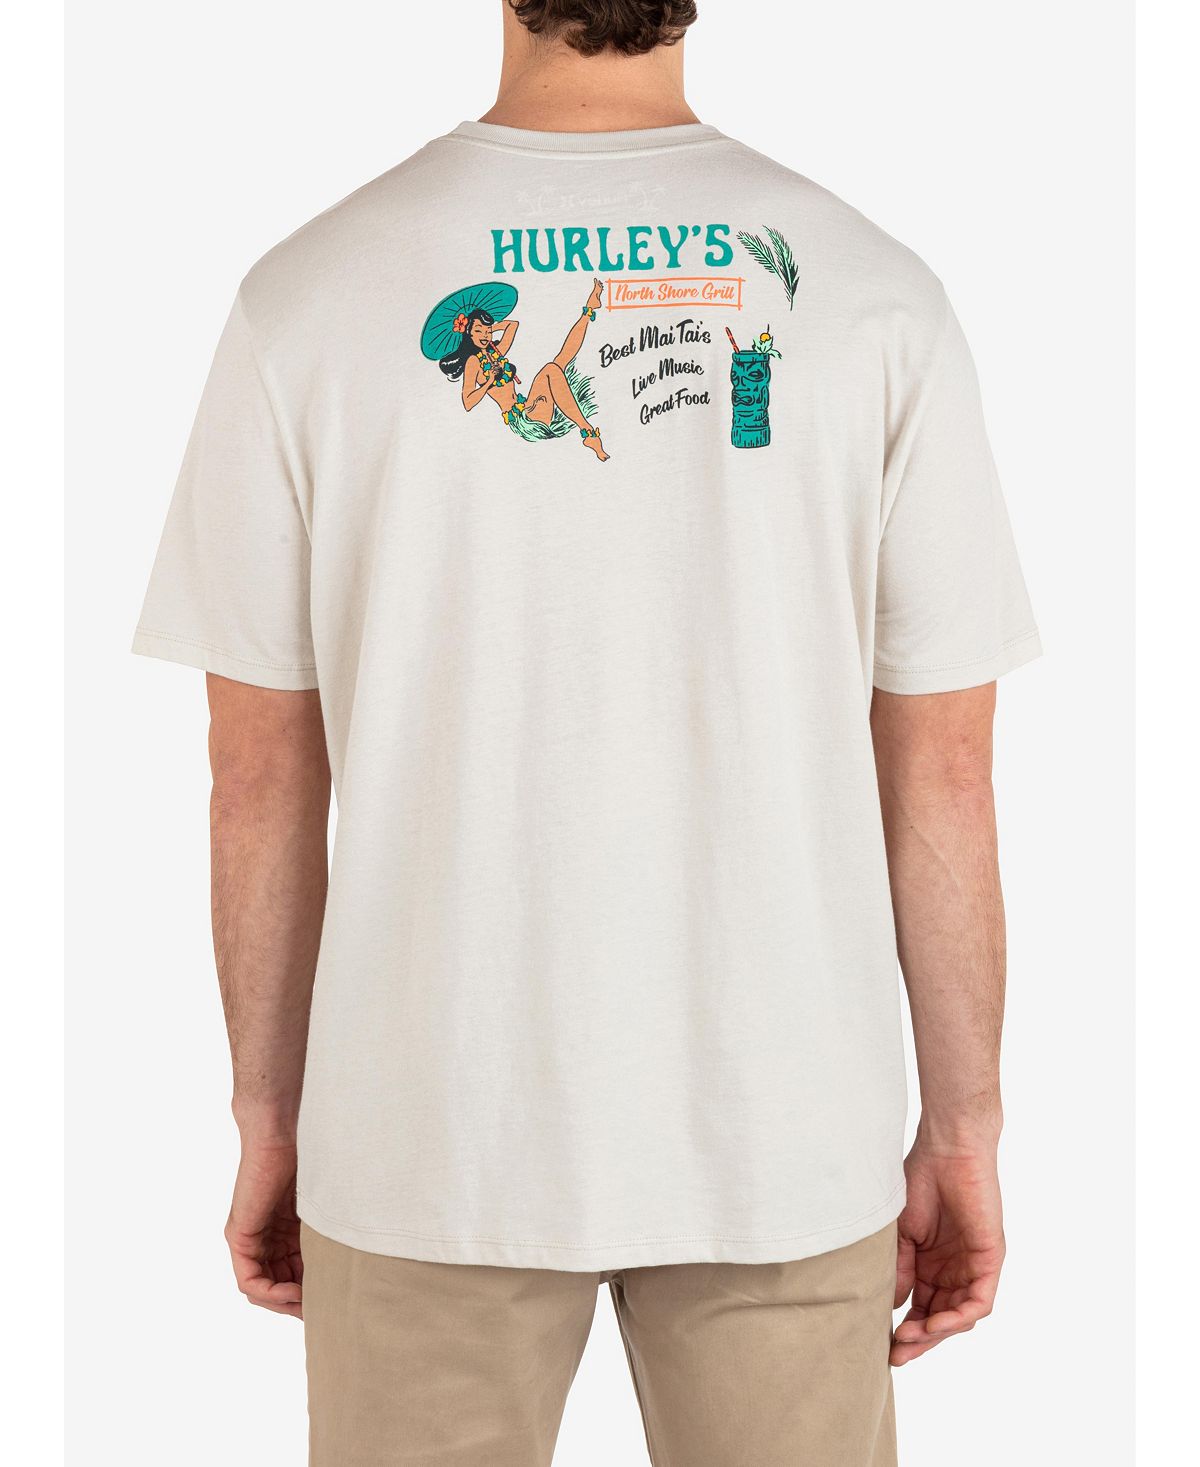 Мужская футболка Northshore Gal с коротким рукавом на каждый день Hurley мужская повседневная футболка с короткими рукавами и четырьмя углами hurley